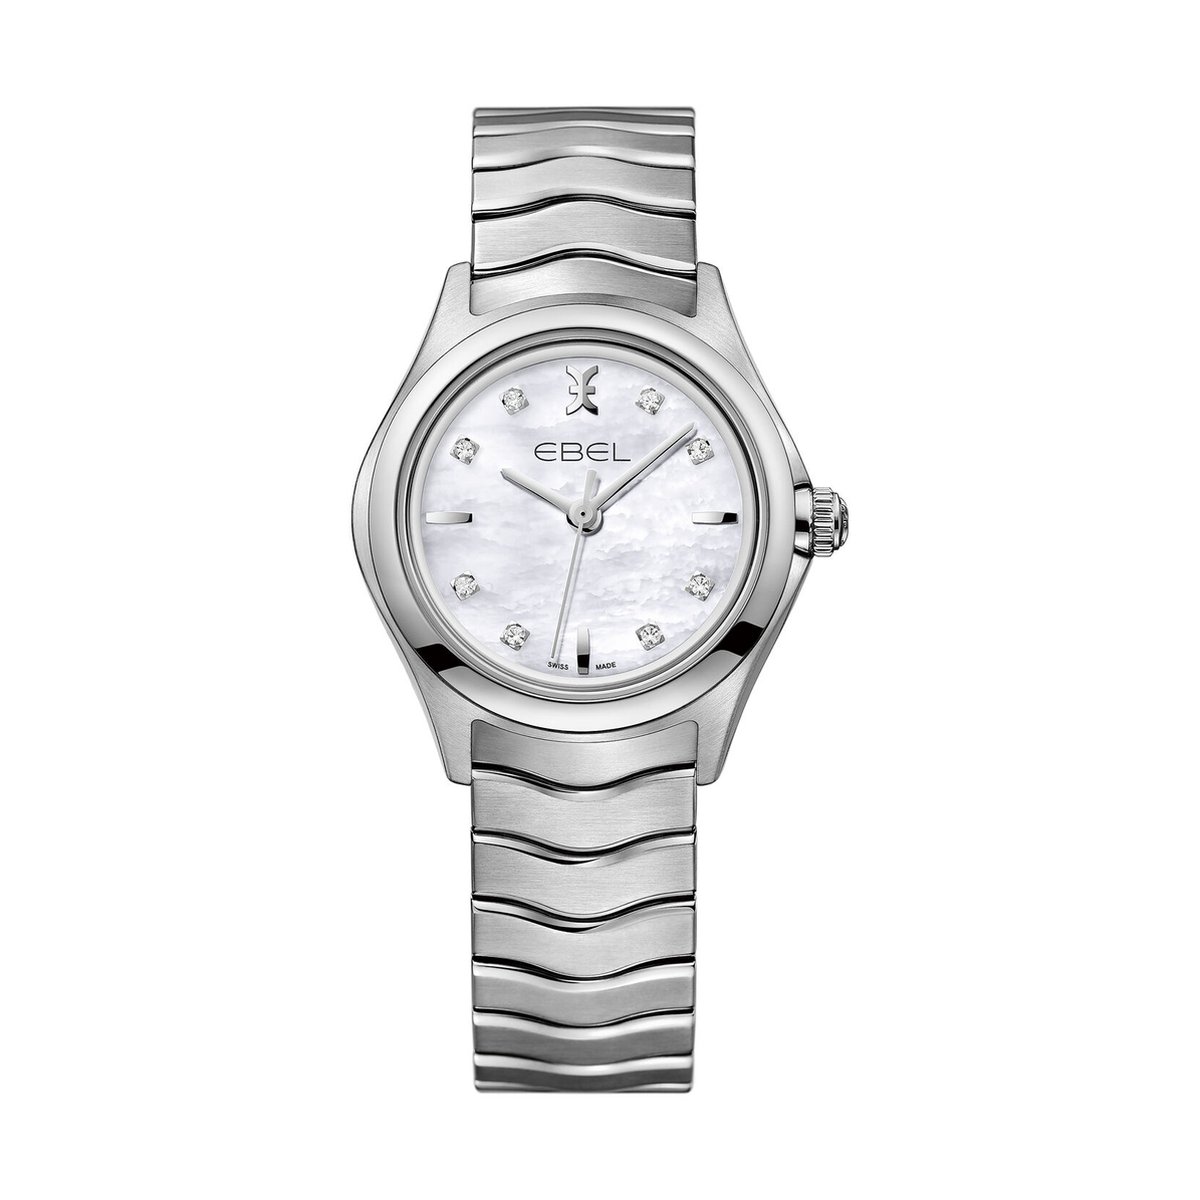 Ebel - Wave -1216193 - horloge - vrouwen - diamant - staal - quartz - sale juwelier Verlinden St. Hubert van €1950,= voor €1459,=